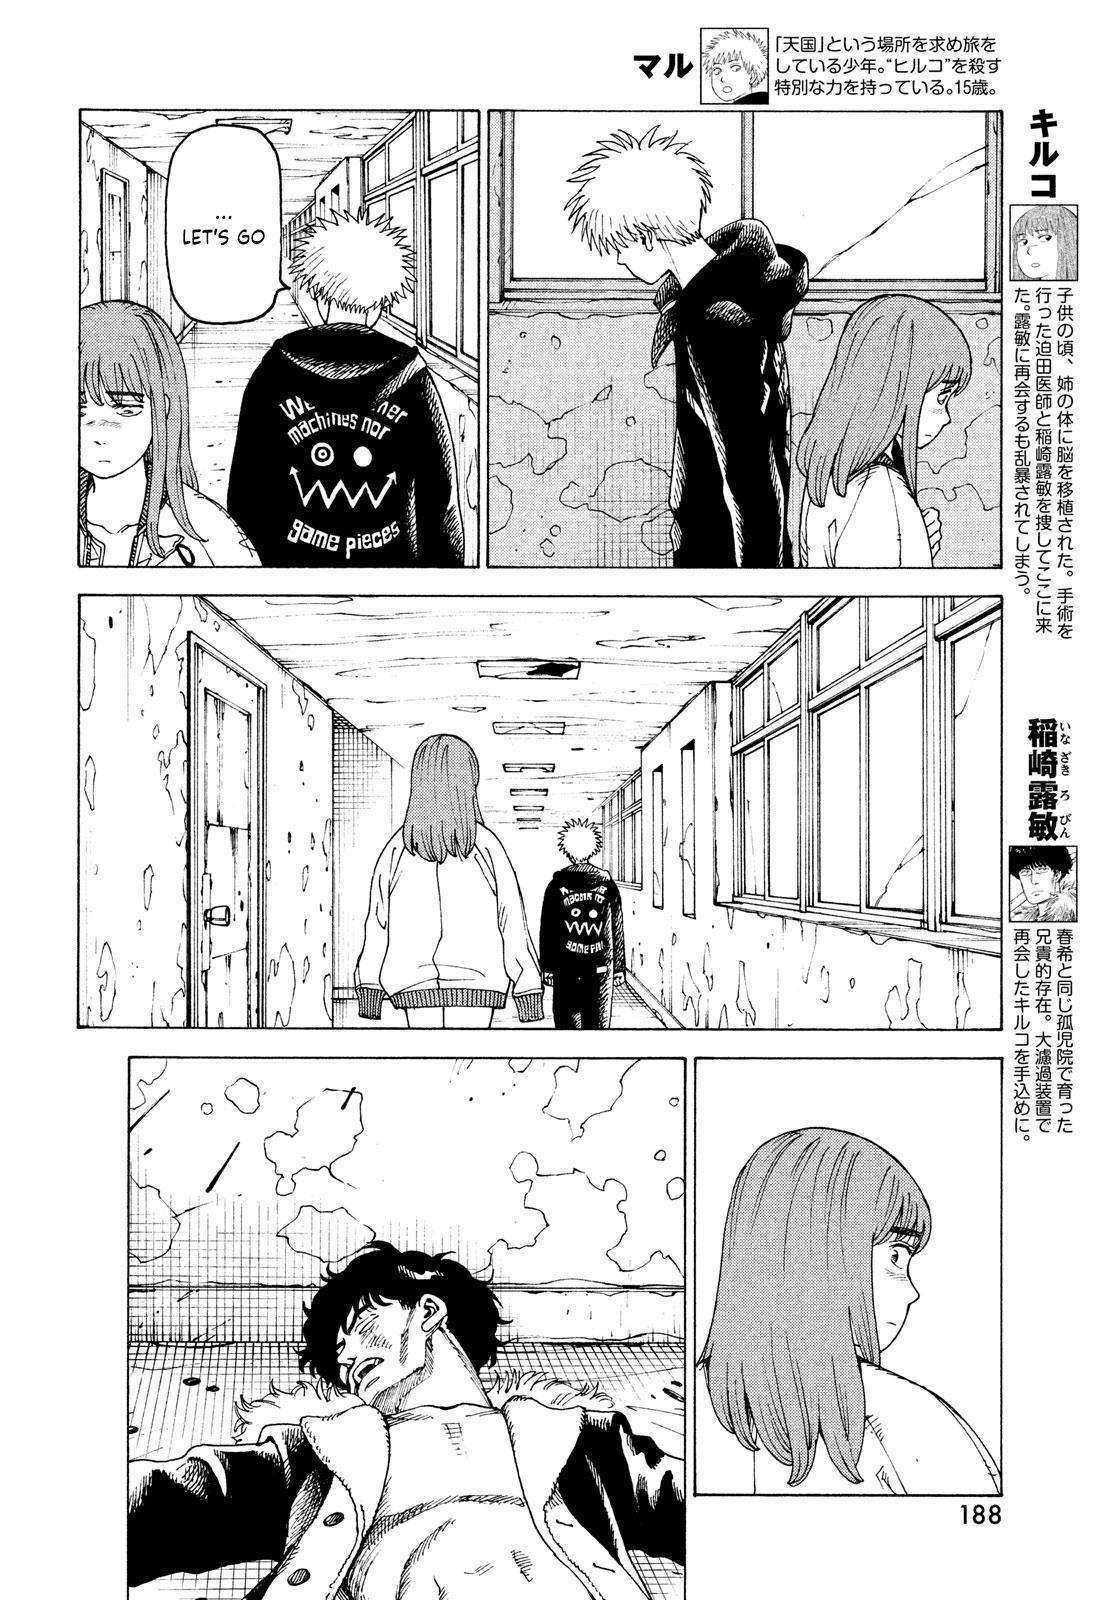 Tengoku Daimakyou Chapter 34: Inazaki Robin ➂ page 4 - Mangakakalot